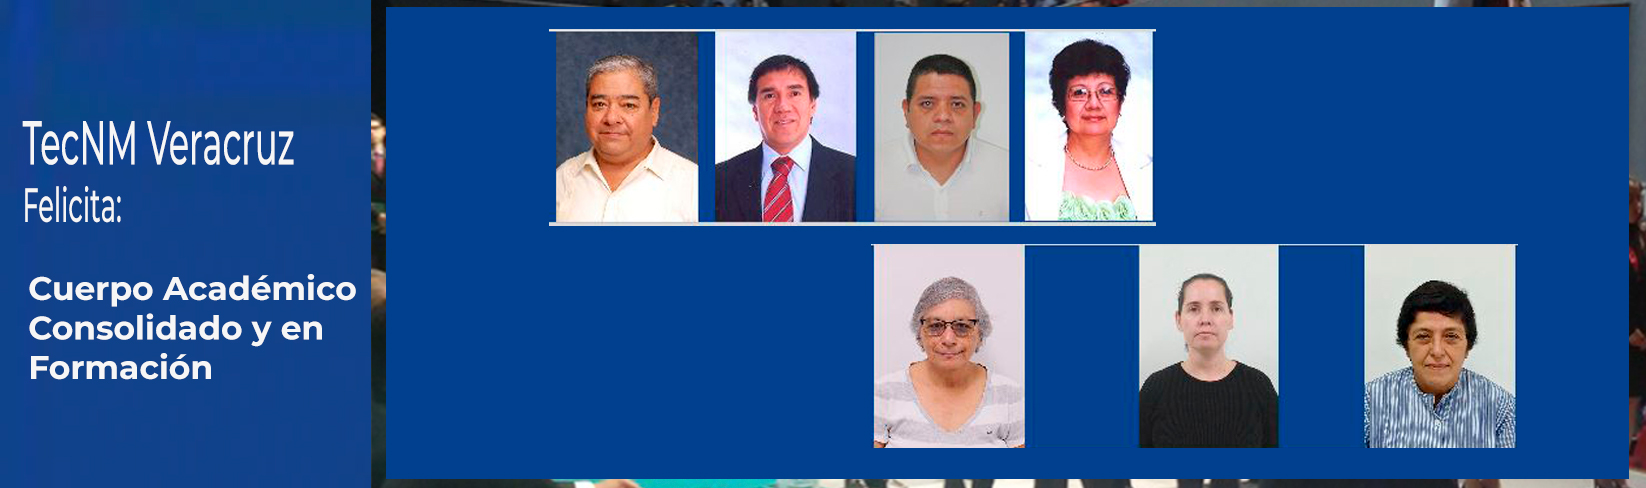 TecNM Veracruz felcita a los cuerpos académicos consolidado y en formación